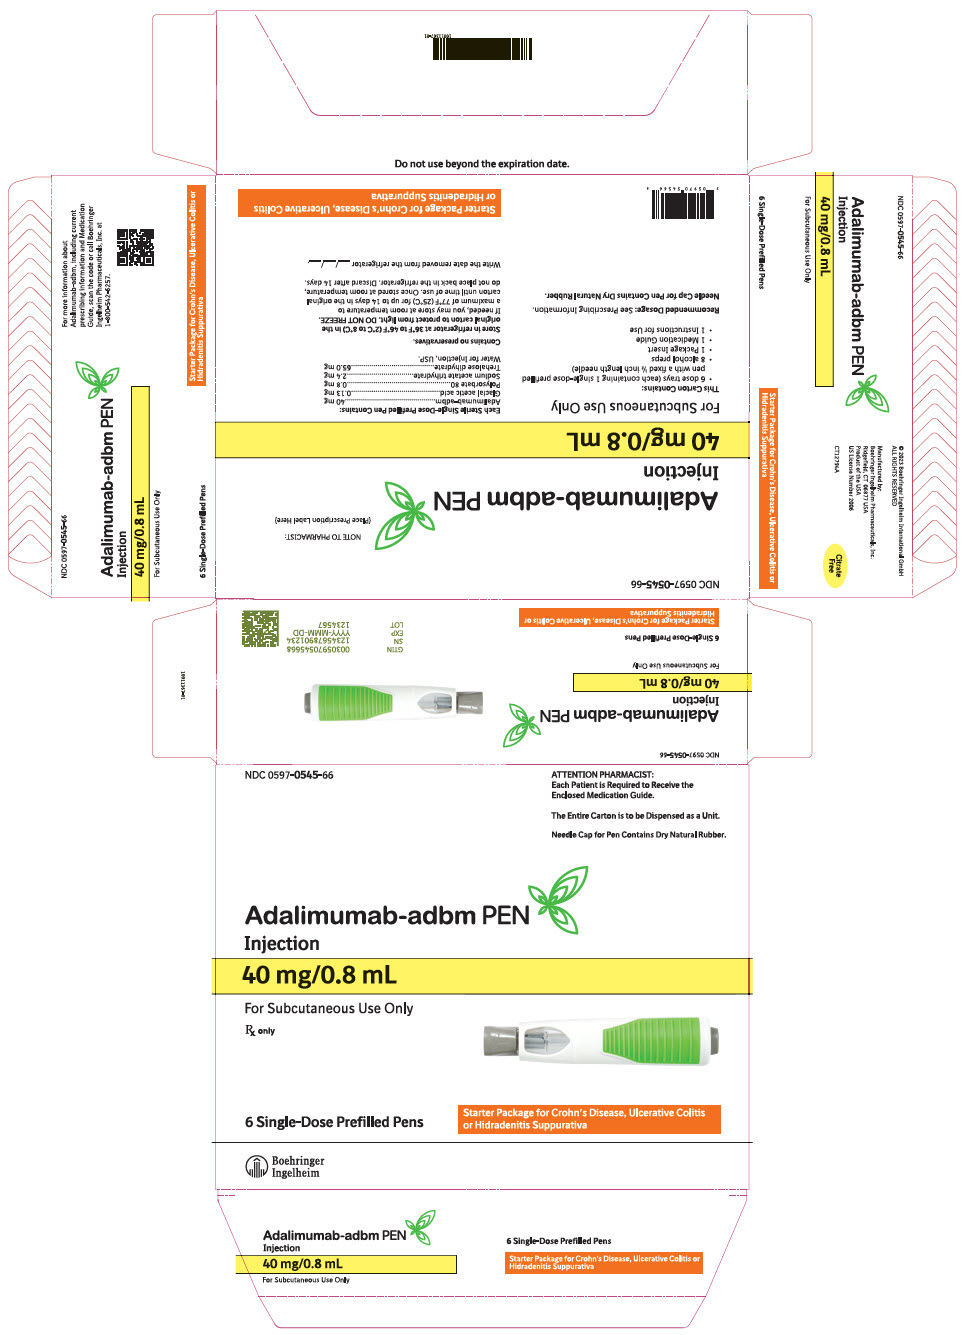 PRINCIPAL DISPLAY PANEL - 40 mg/0.8 mL Kit Carton - NDC 0597-0545-66